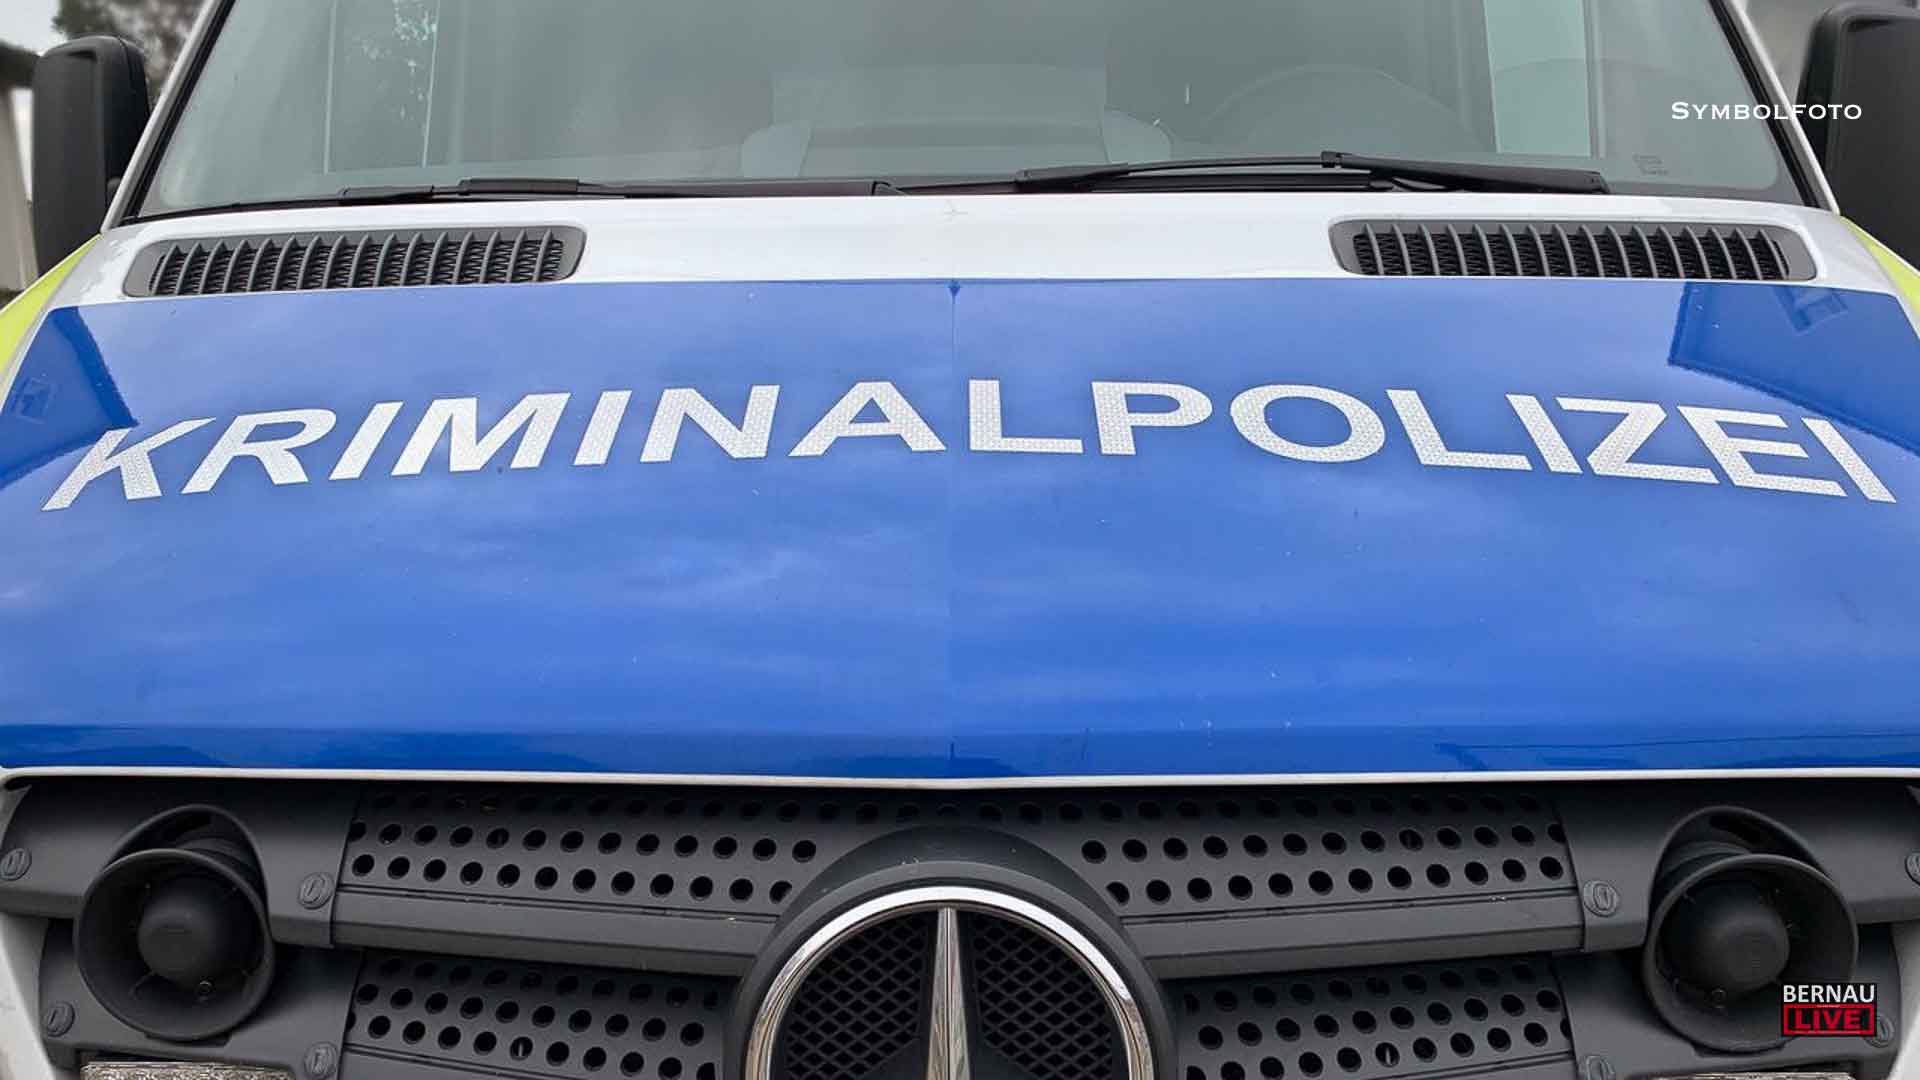 Mutmaßliche Nötigung einer Frau in der S-Bahn - Polizei Bernau sucht Zeugen